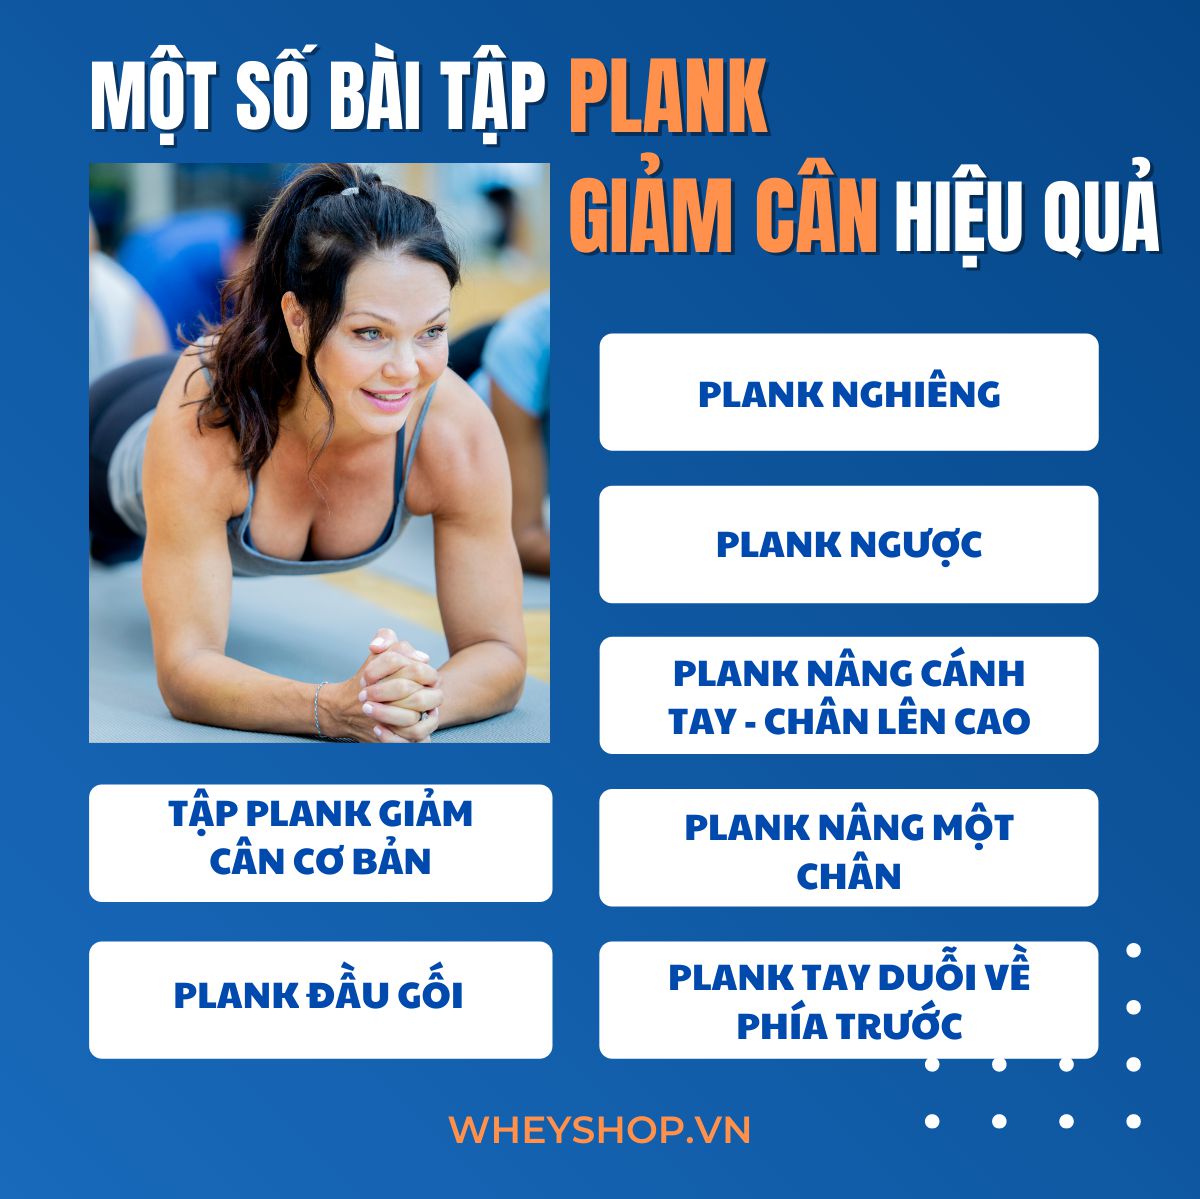 Plank được xem như là bài tập cơ bản và hiệu quả mà bất kỳ người nào tập gym cũng cần phải biết. Tuy nhiên, làm sao để tập Plank giảm cân toàn thân thì lại...